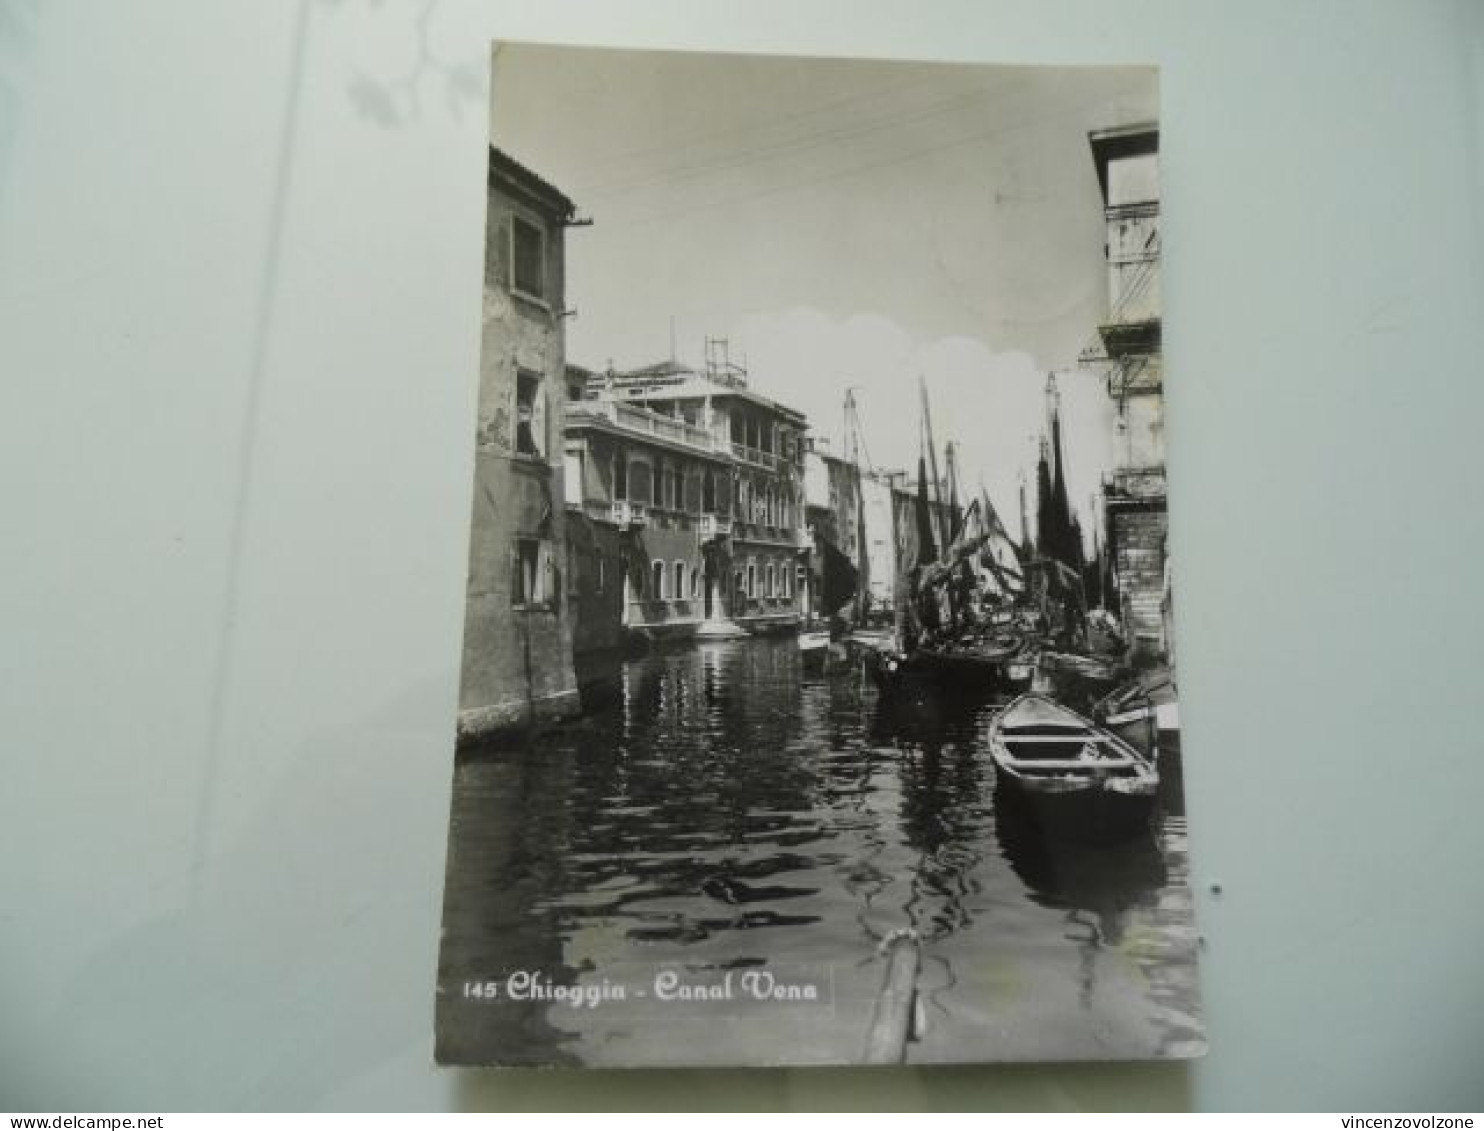 Cartolina Viaggiata "CHIOGGIA Canal Vena" 1956 - Chioggia